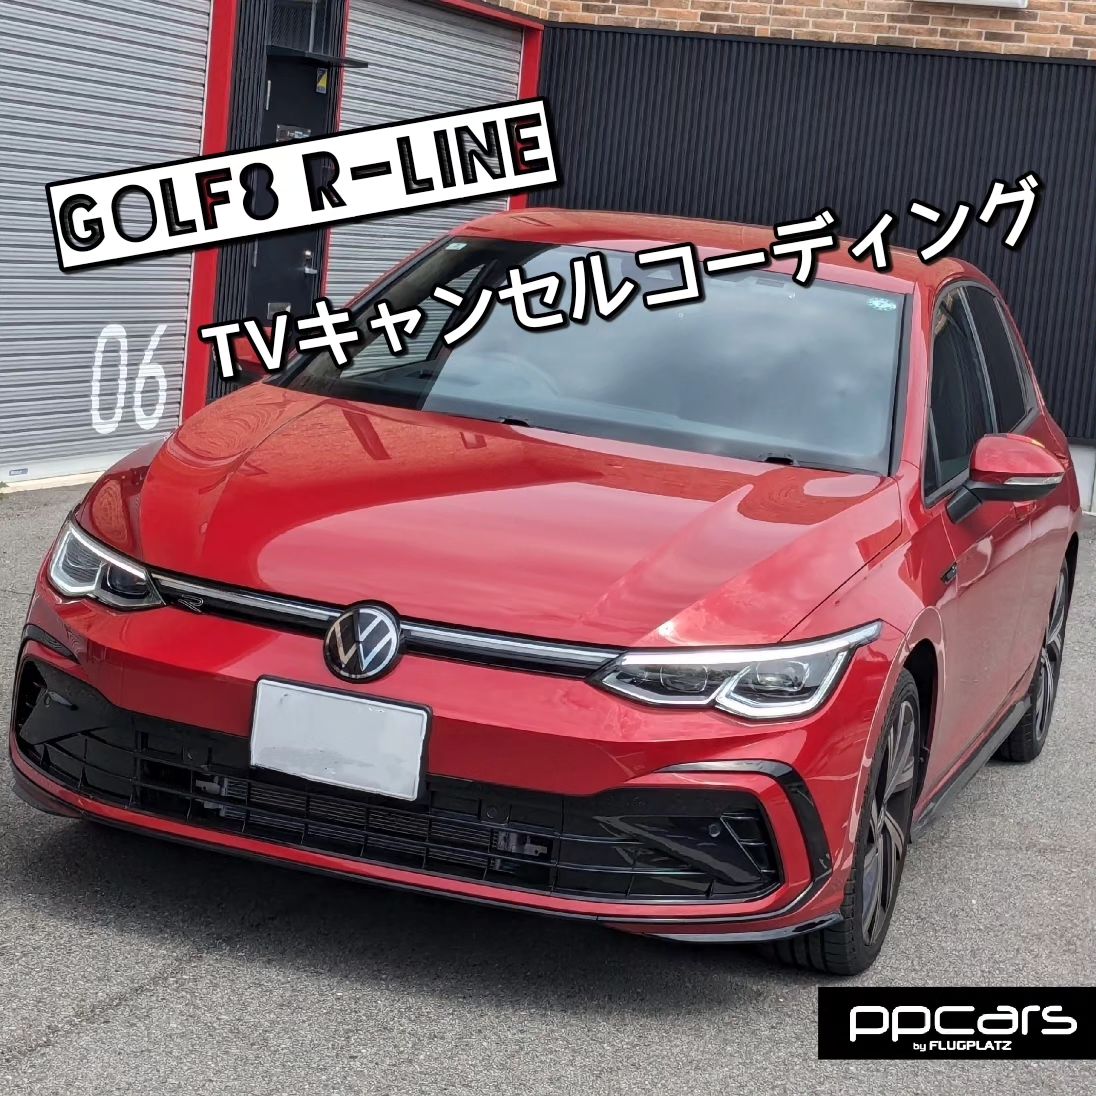 Golf8 (5H) R-Line x コーディング (TVキャンセル)